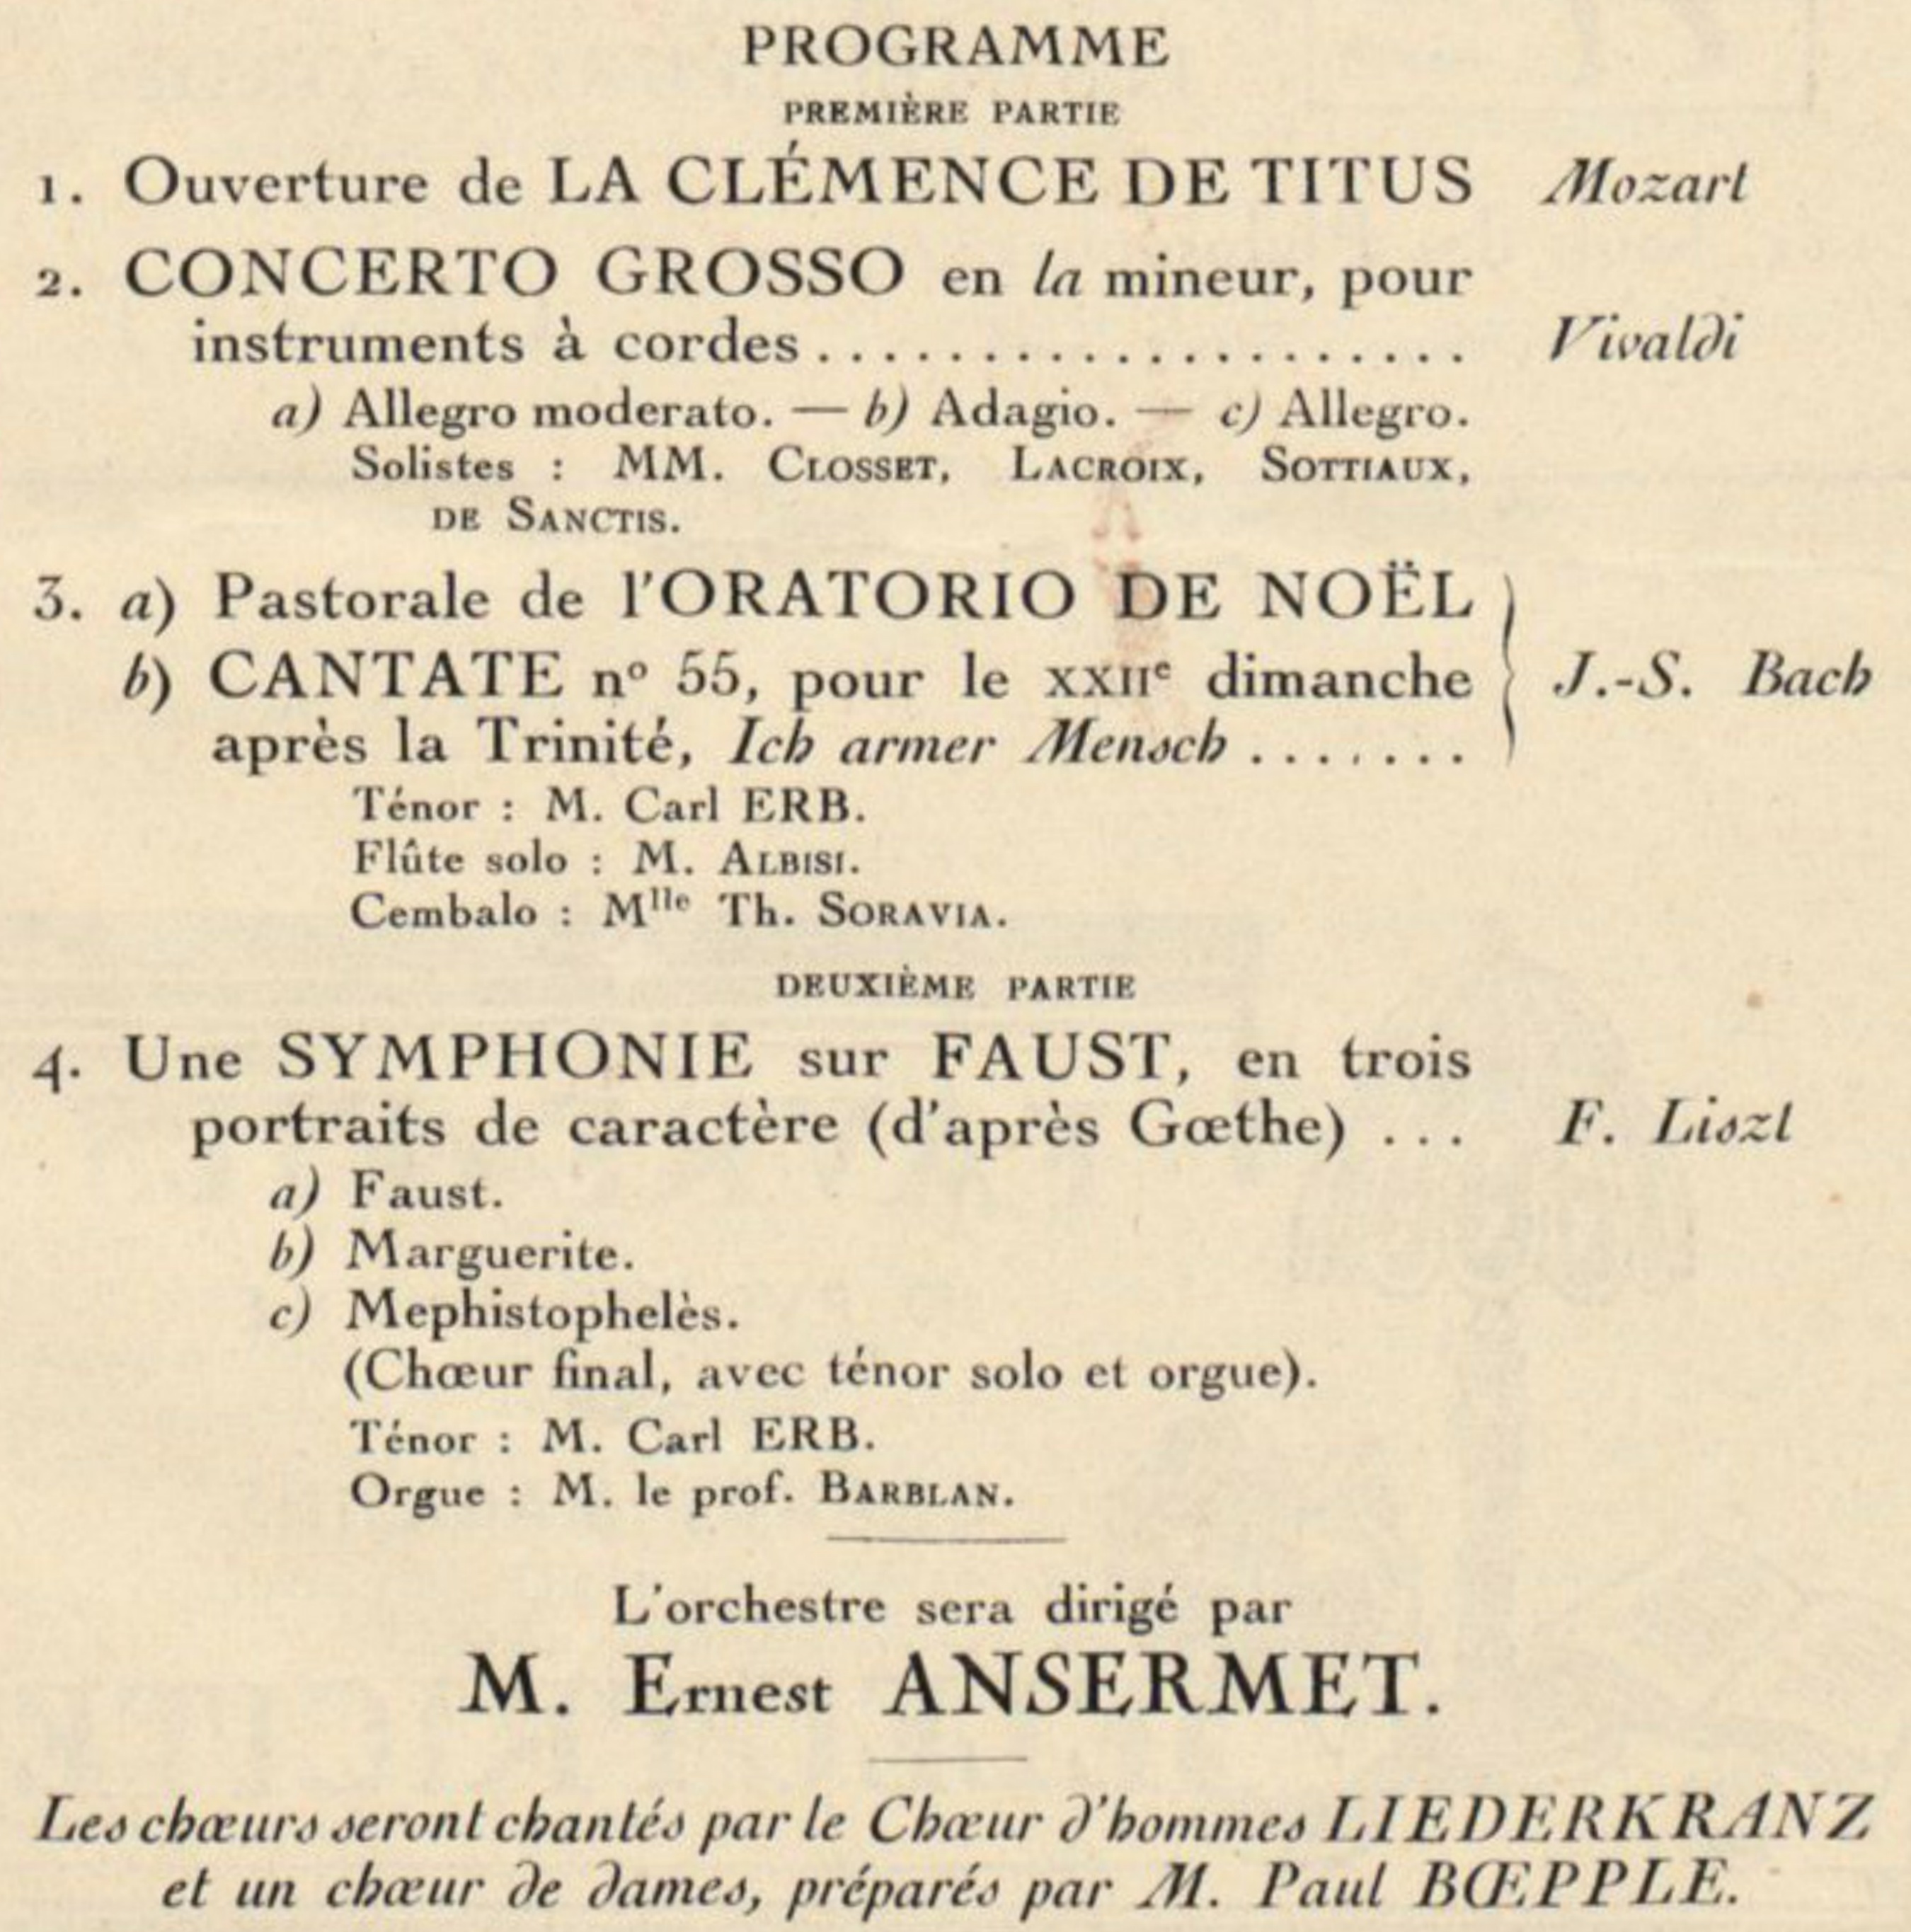 Extrait de la 1ère page de la brochure-programme de ce concert, CLIQUER pour voir l'original